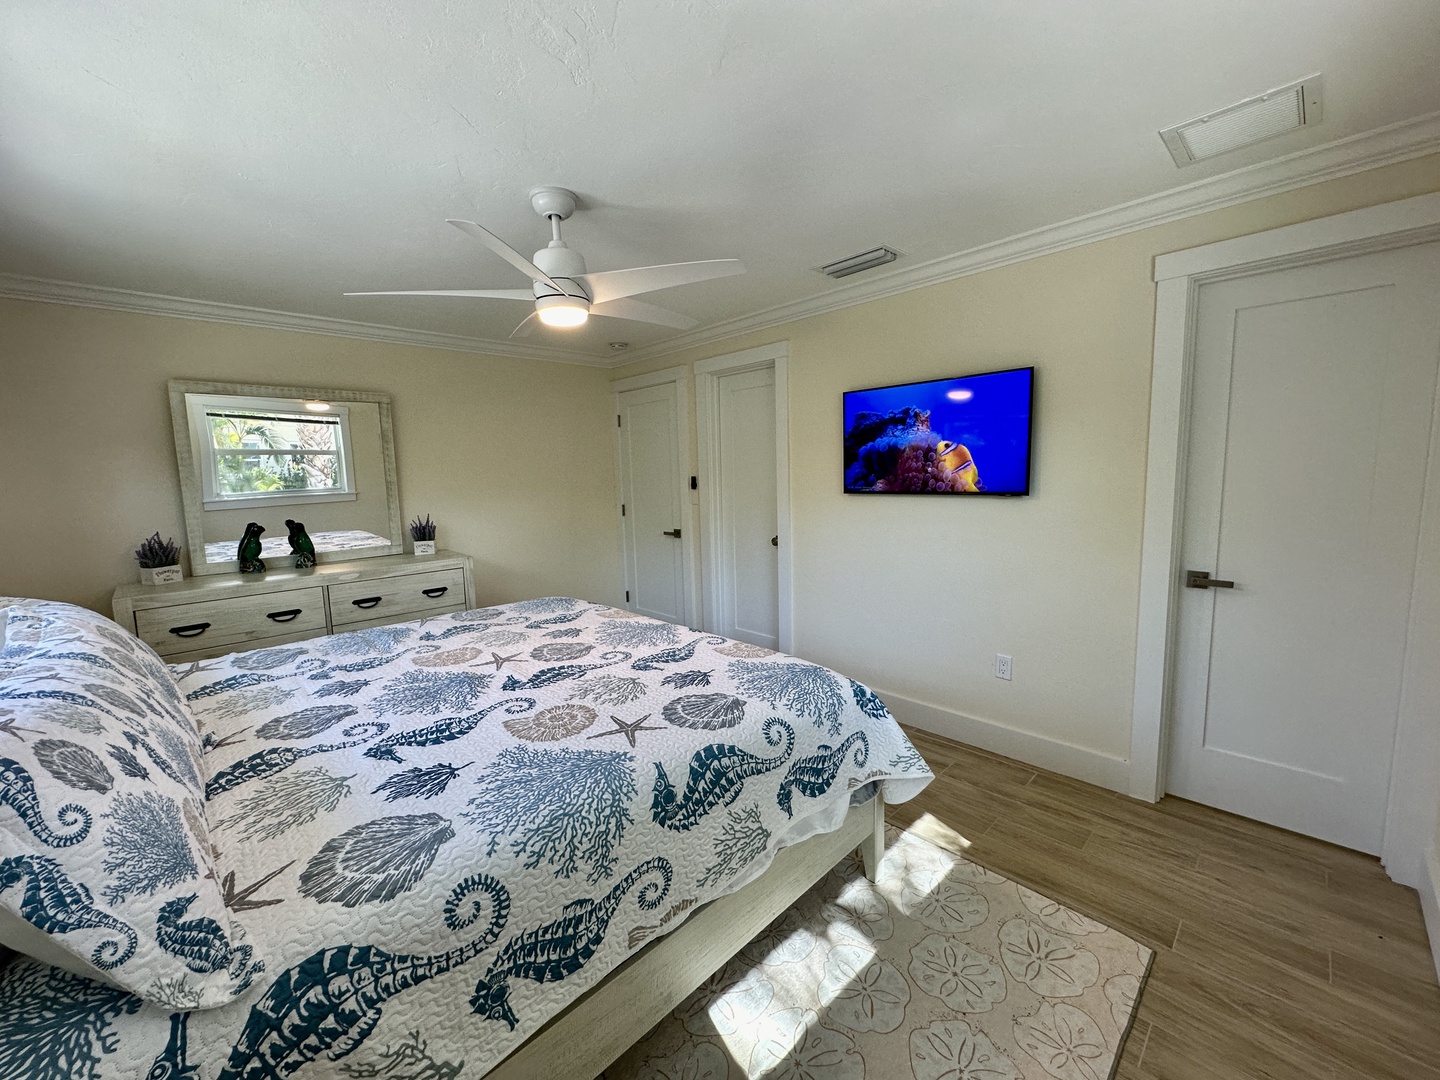 Smart TV, walk-in closet, en-suite bath